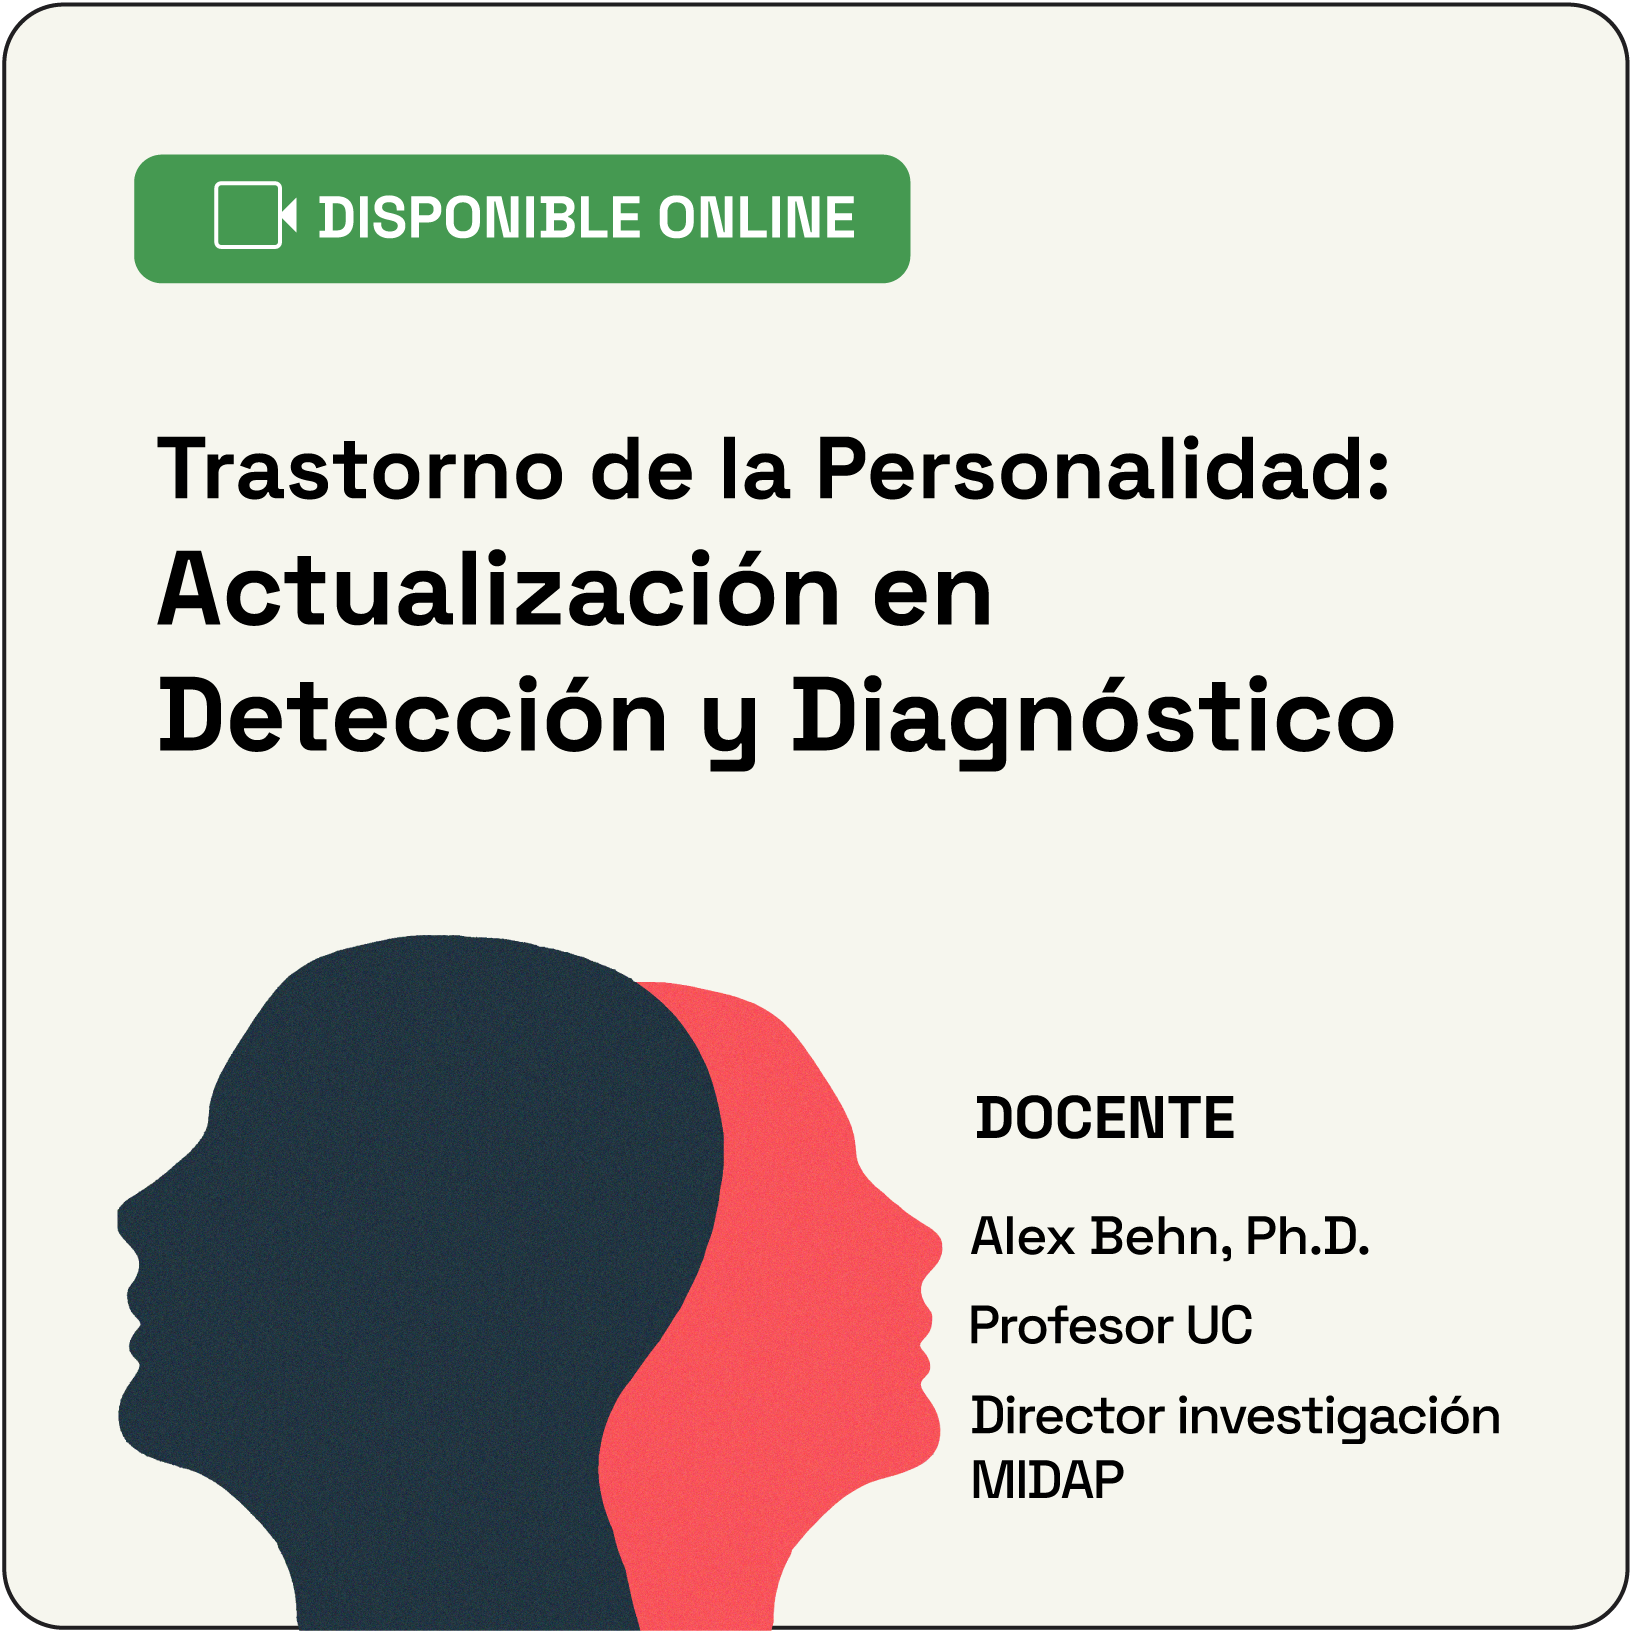 Trastorno de Personalidad: Actualización en Detección y Diagnóstico